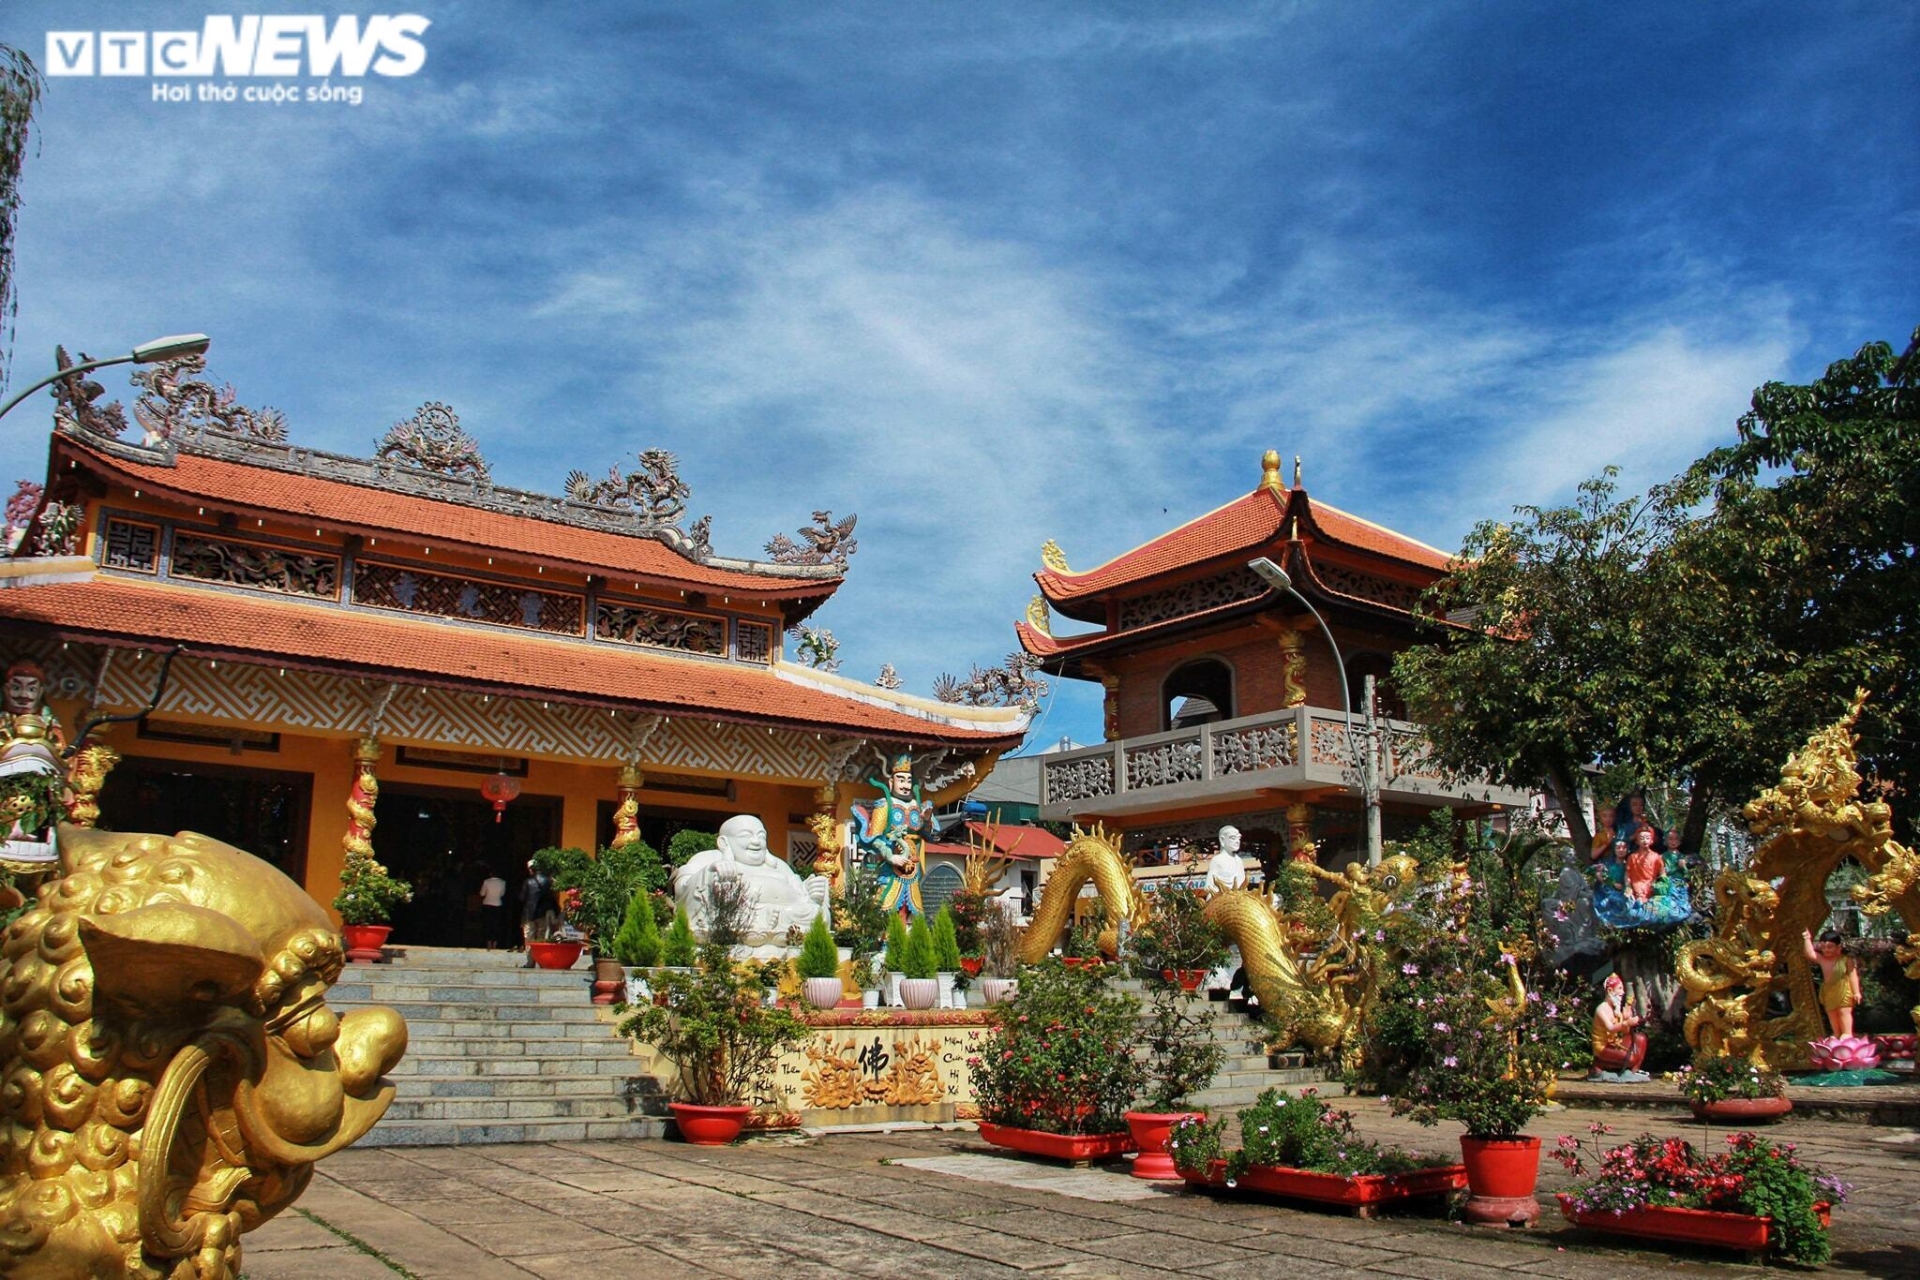 Amazing Vietnam: Kiến trúc độc đáo của ngôi chùa cổ đầu tiên ở Đà Lạt